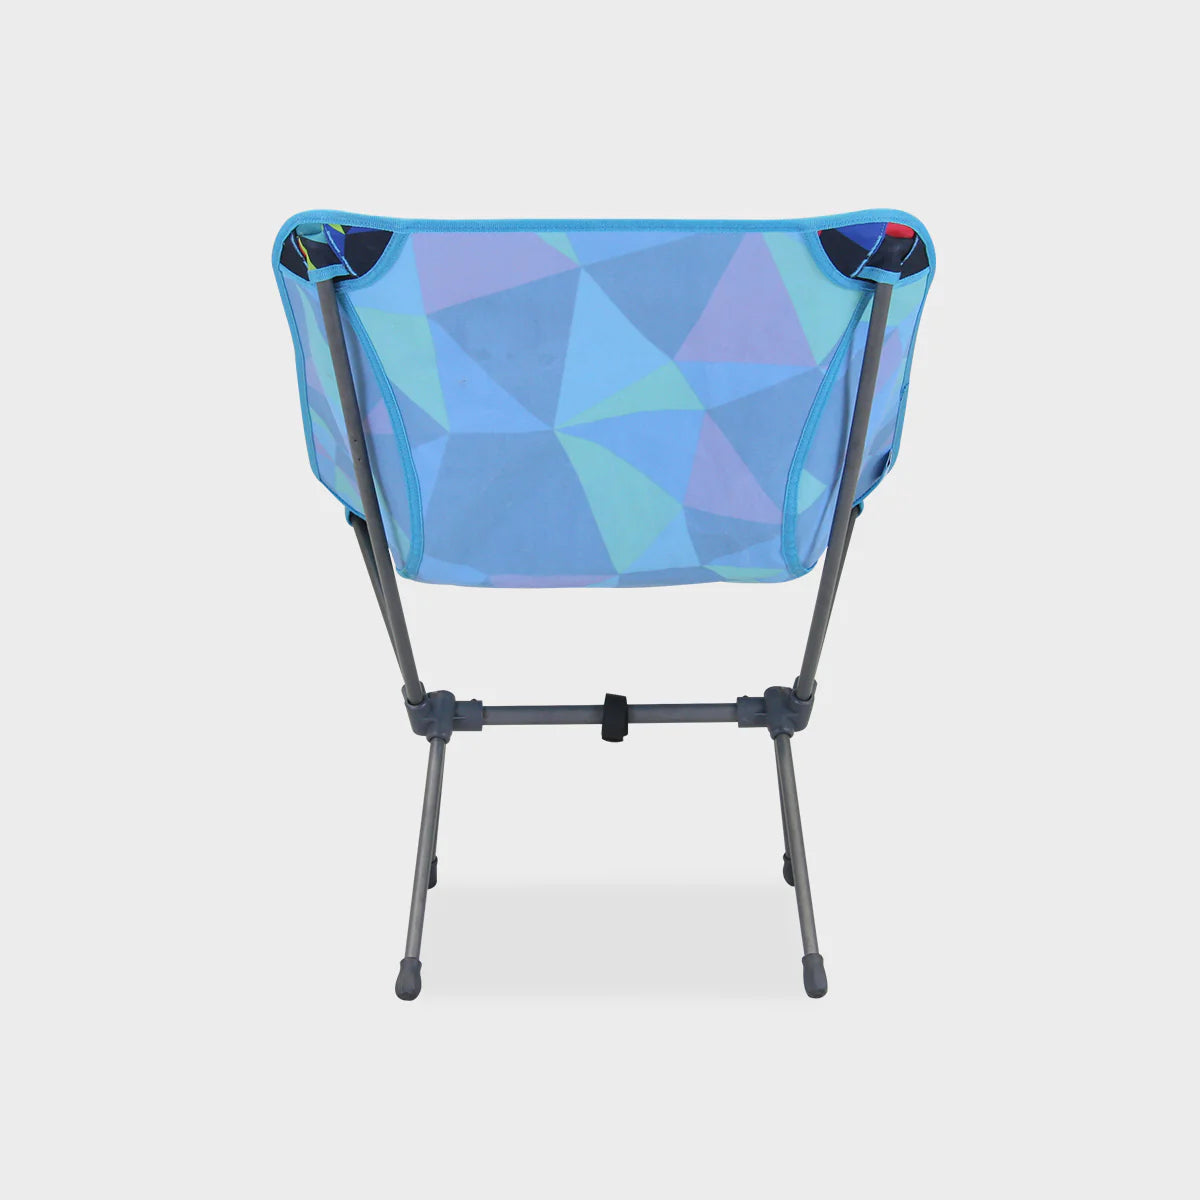 Portal Outdoor - Fusion Camping Chair - Electro